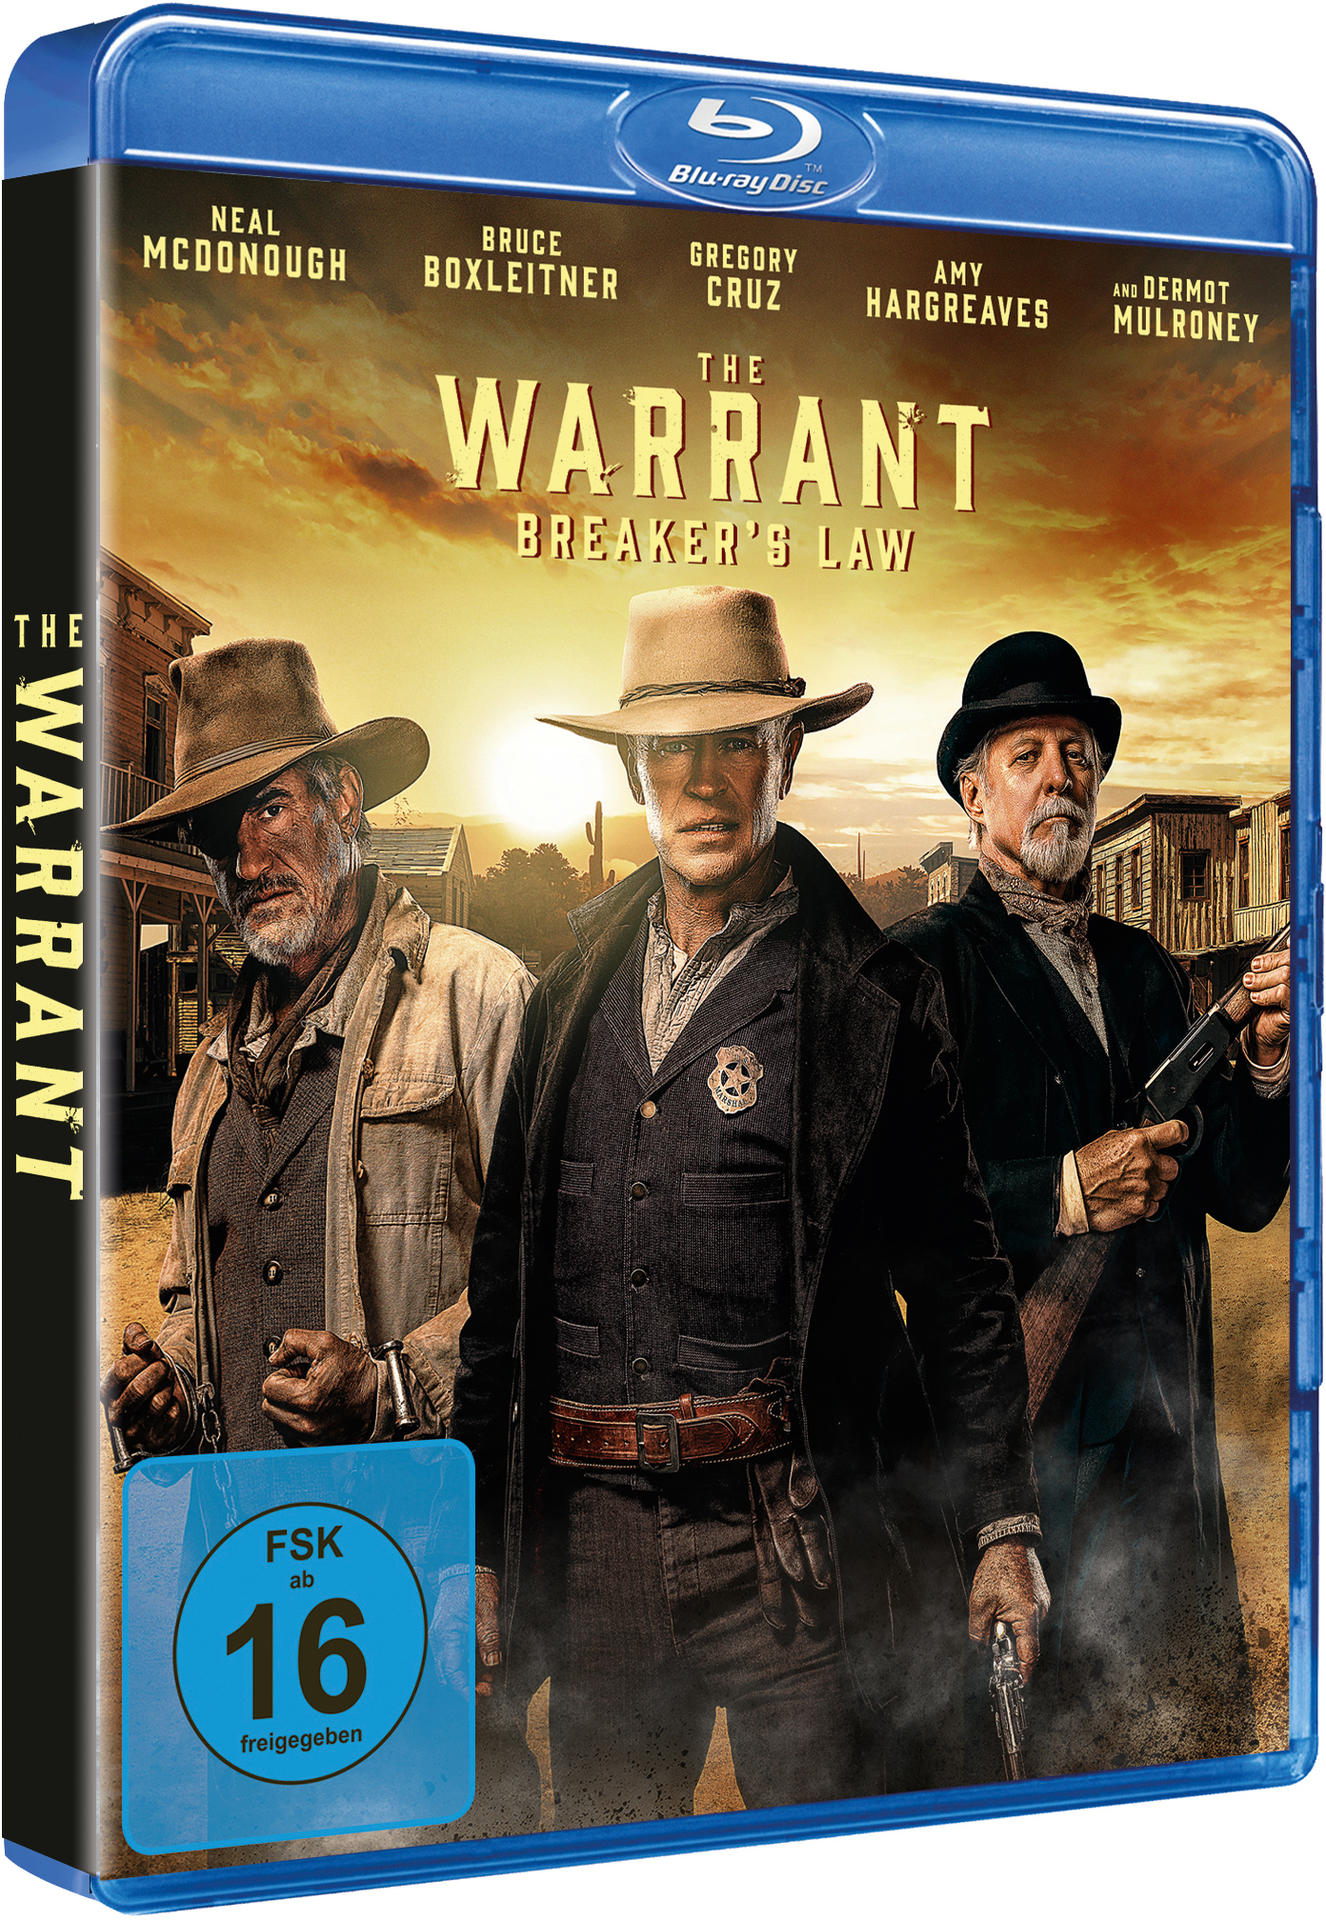 The Warrant: Breakers Law Blu-ray